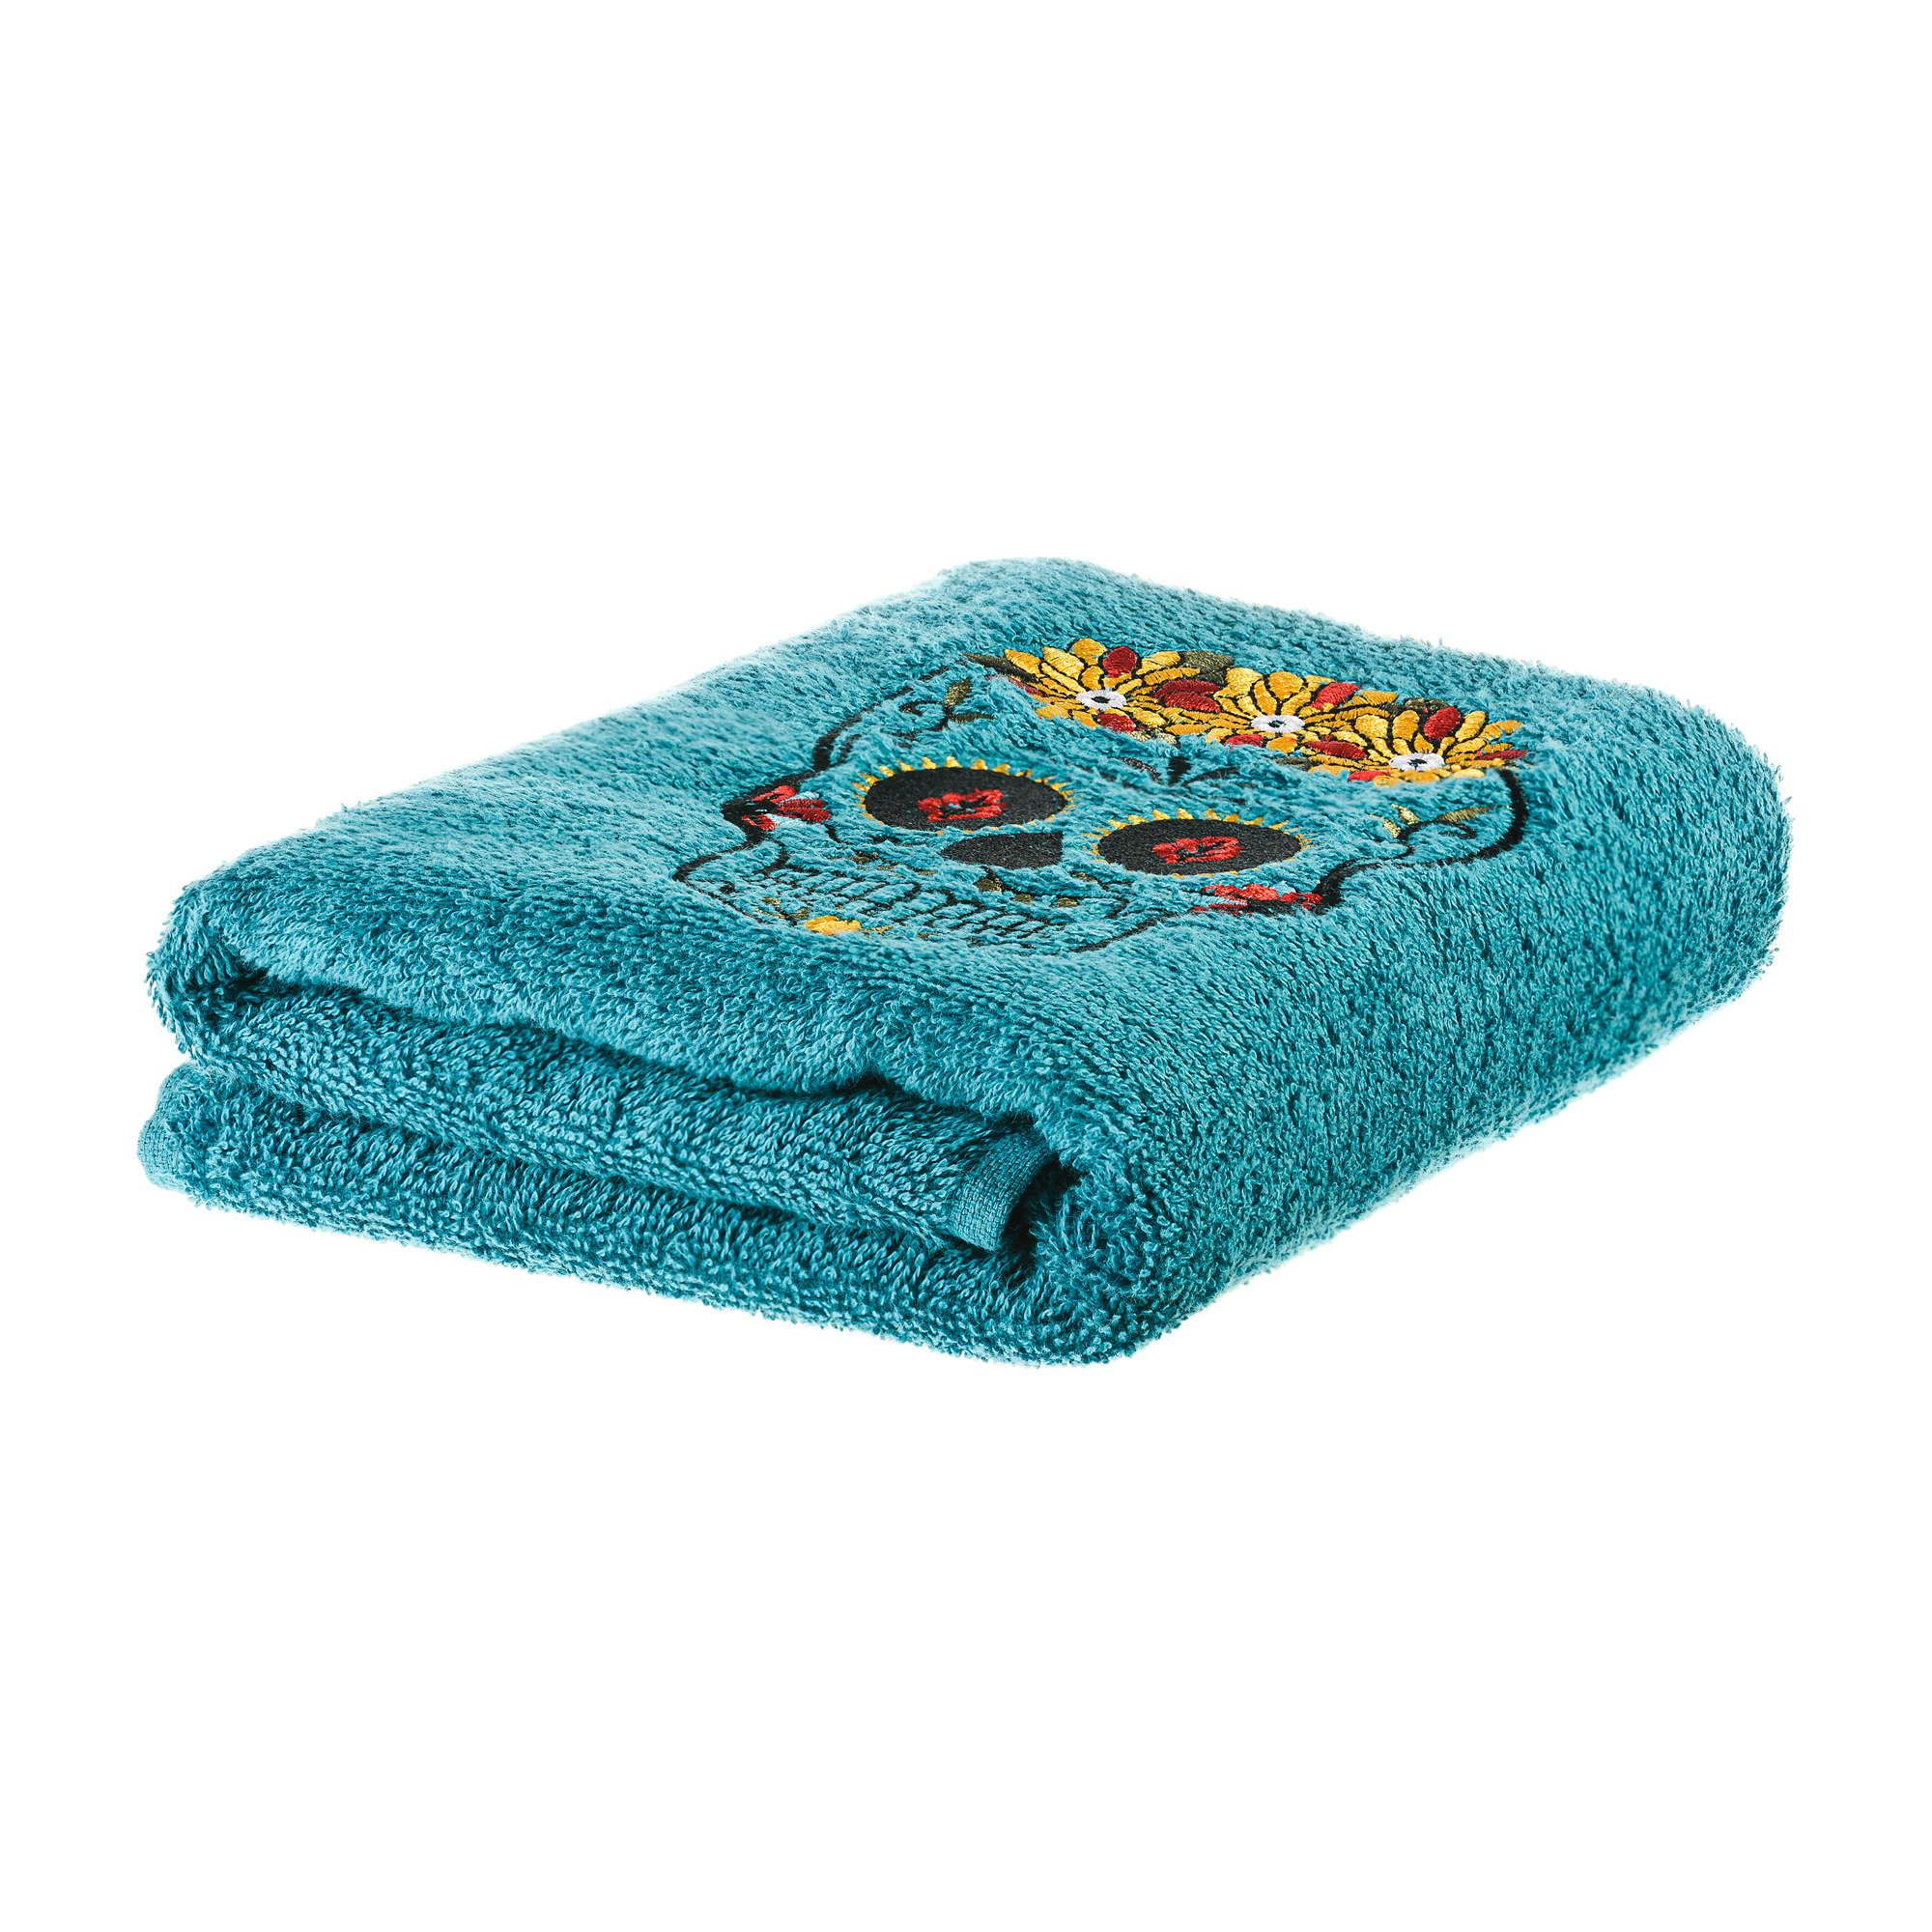 Полотенце Los Muertos для ванной 50х90 см., цвет бирюзовый